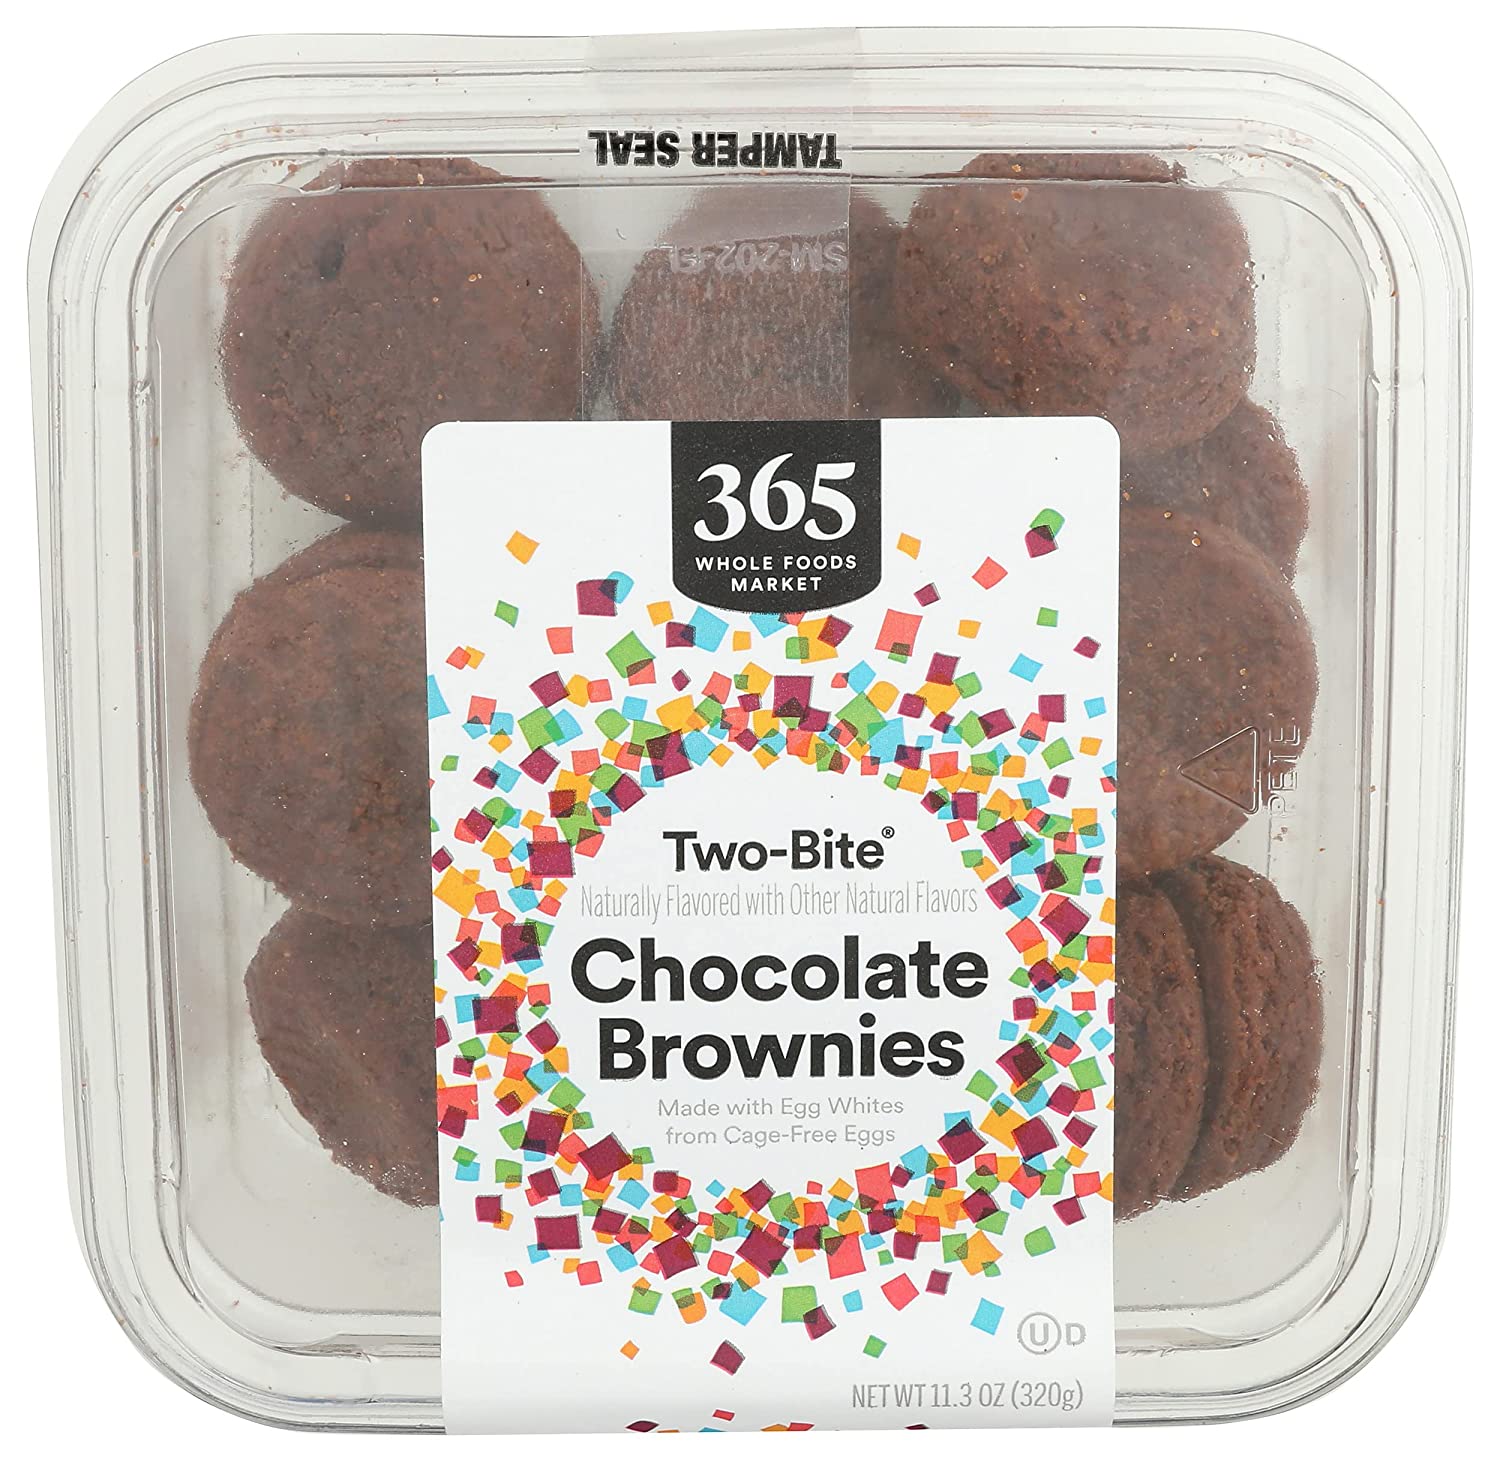 365-Wholefoods-brownies